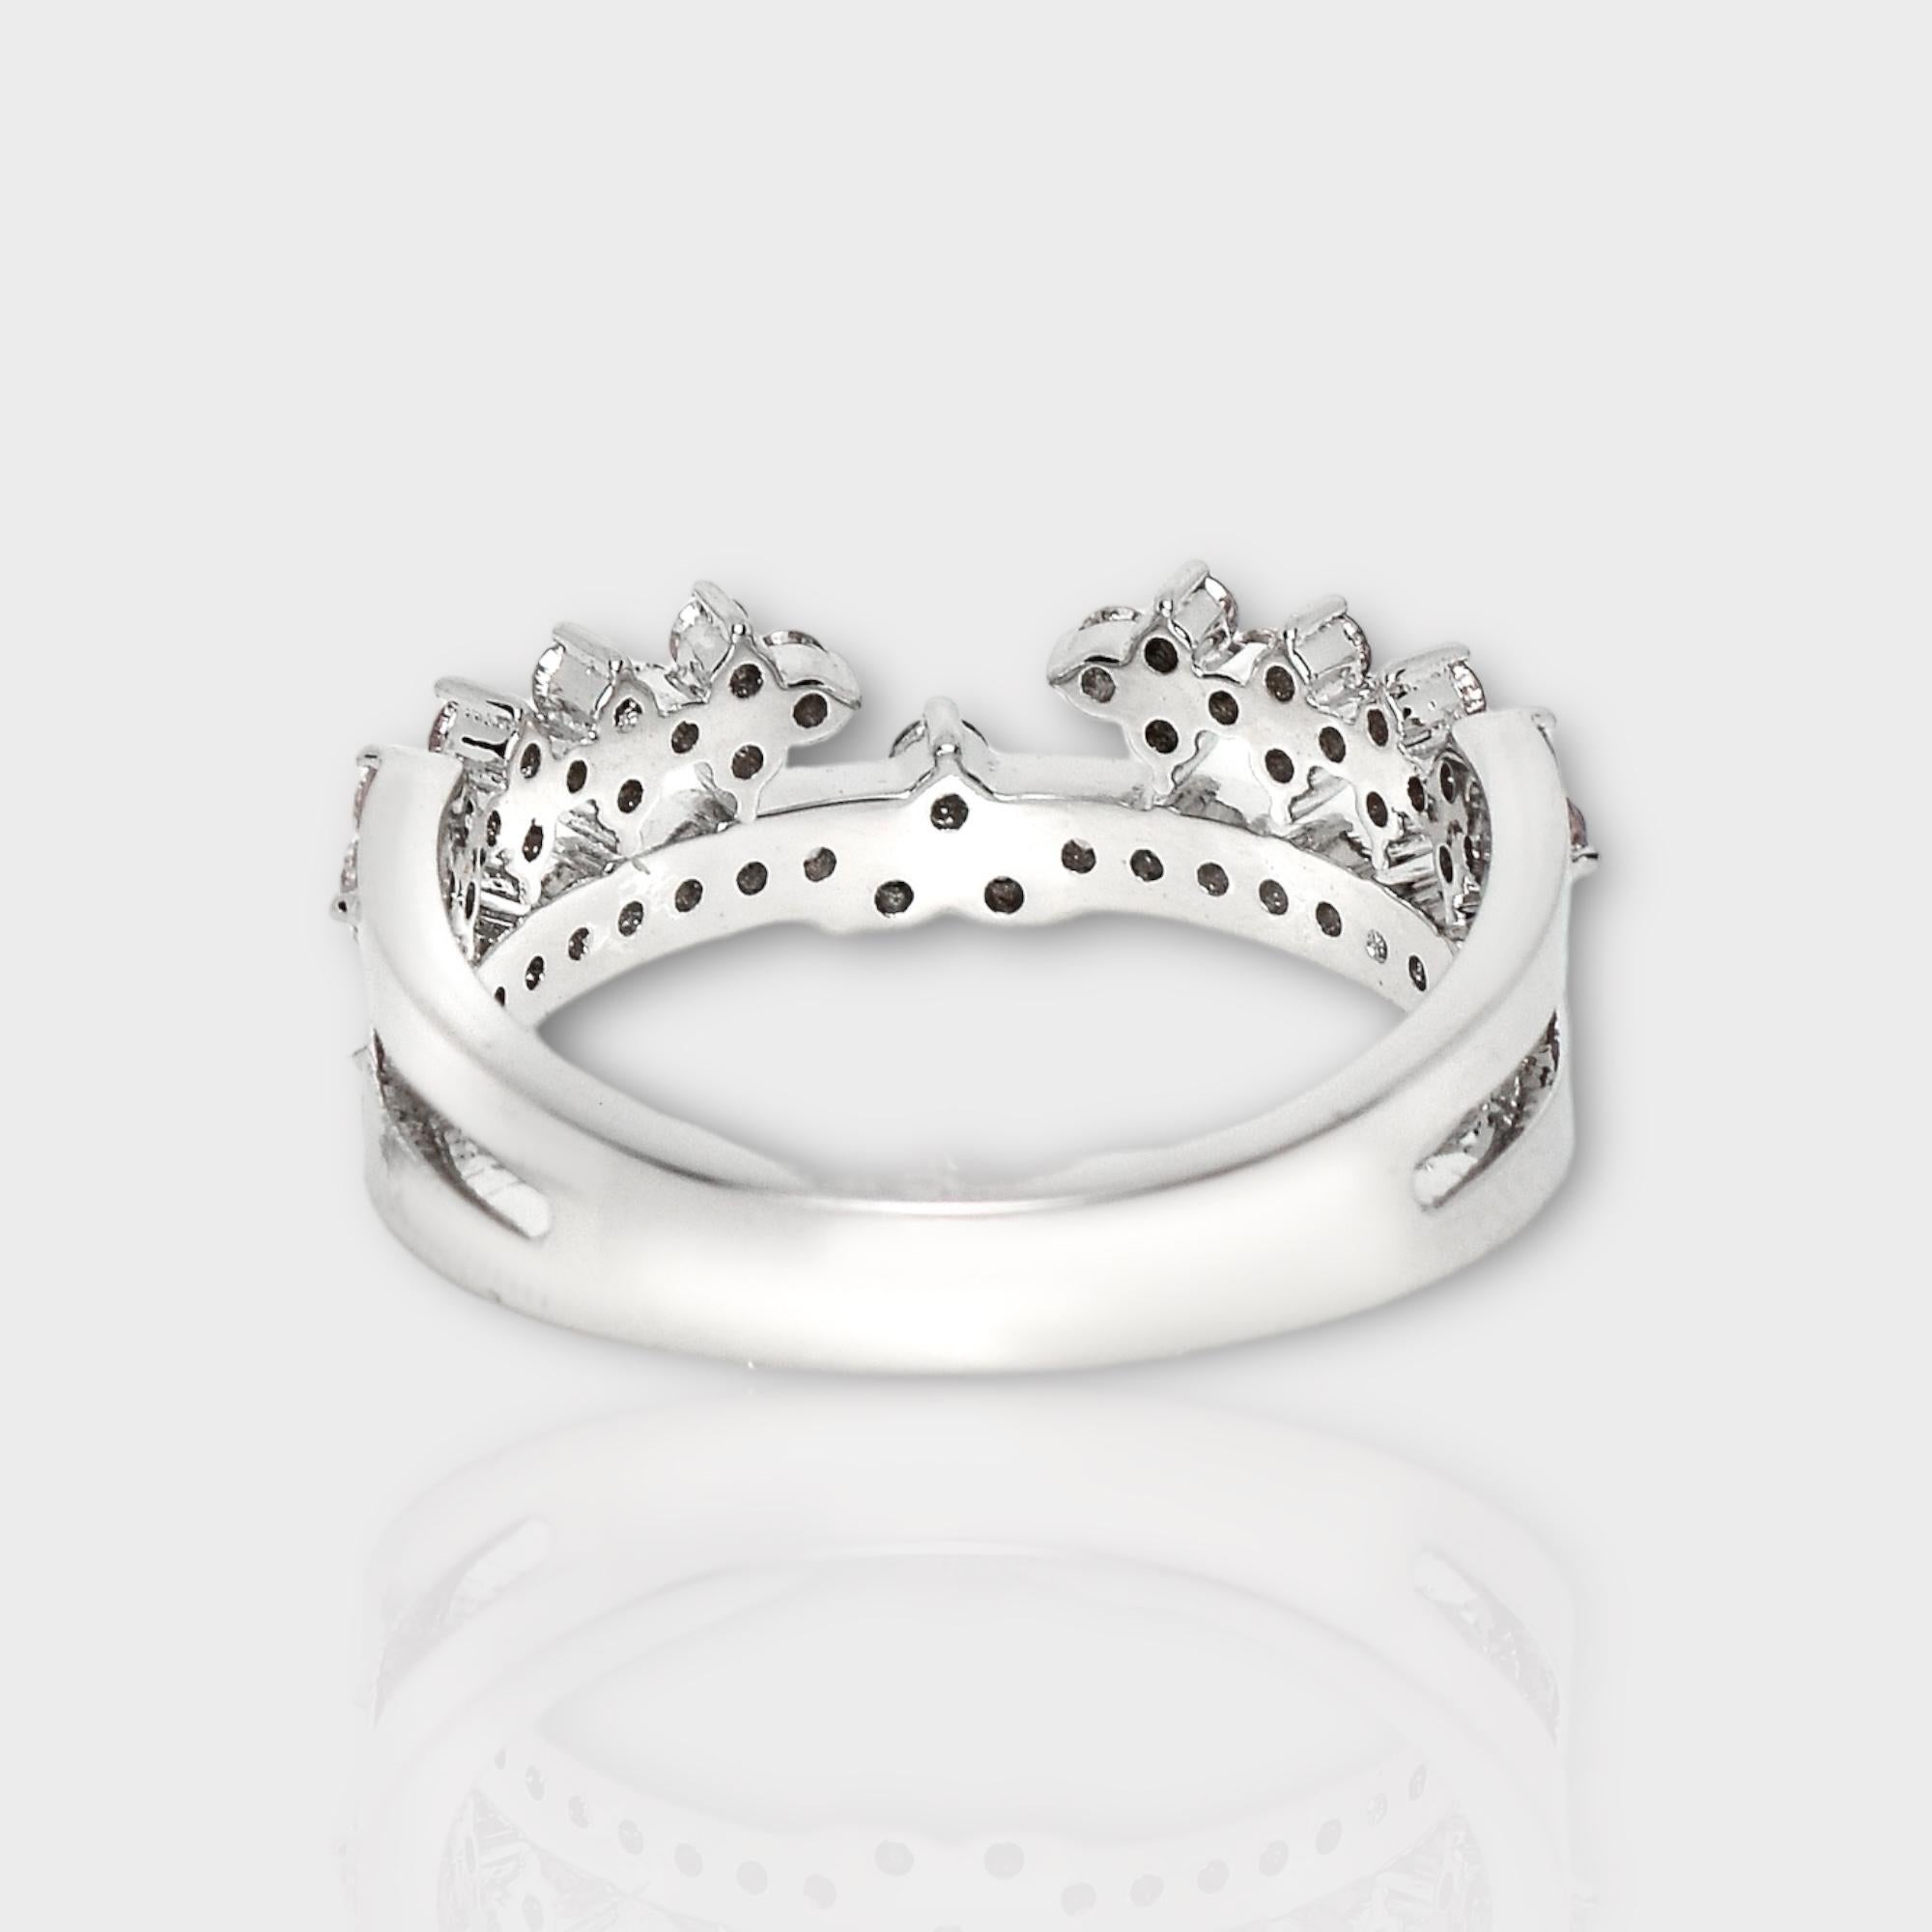 IGI 14K 0.52 ct Natural Pink Diamonds Vintage Crown Design Engagement Ring For Sale 3